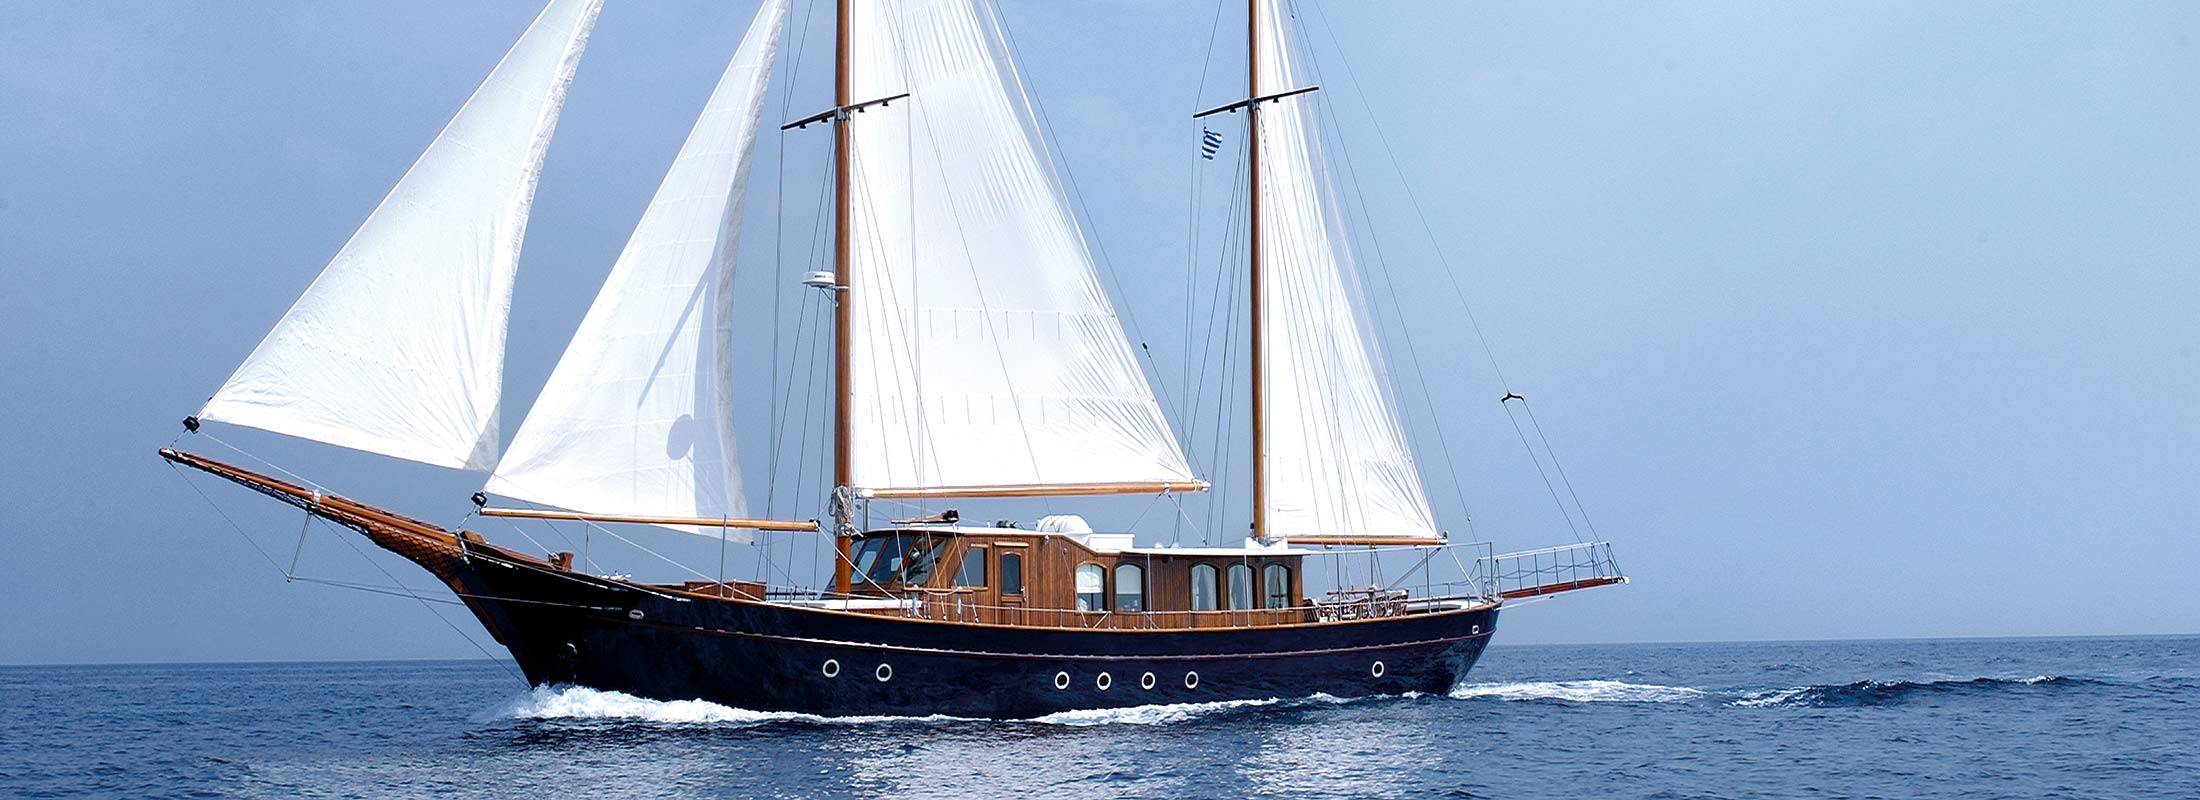 Liana H Motor Yacht for Charter Mediterranean slider 1